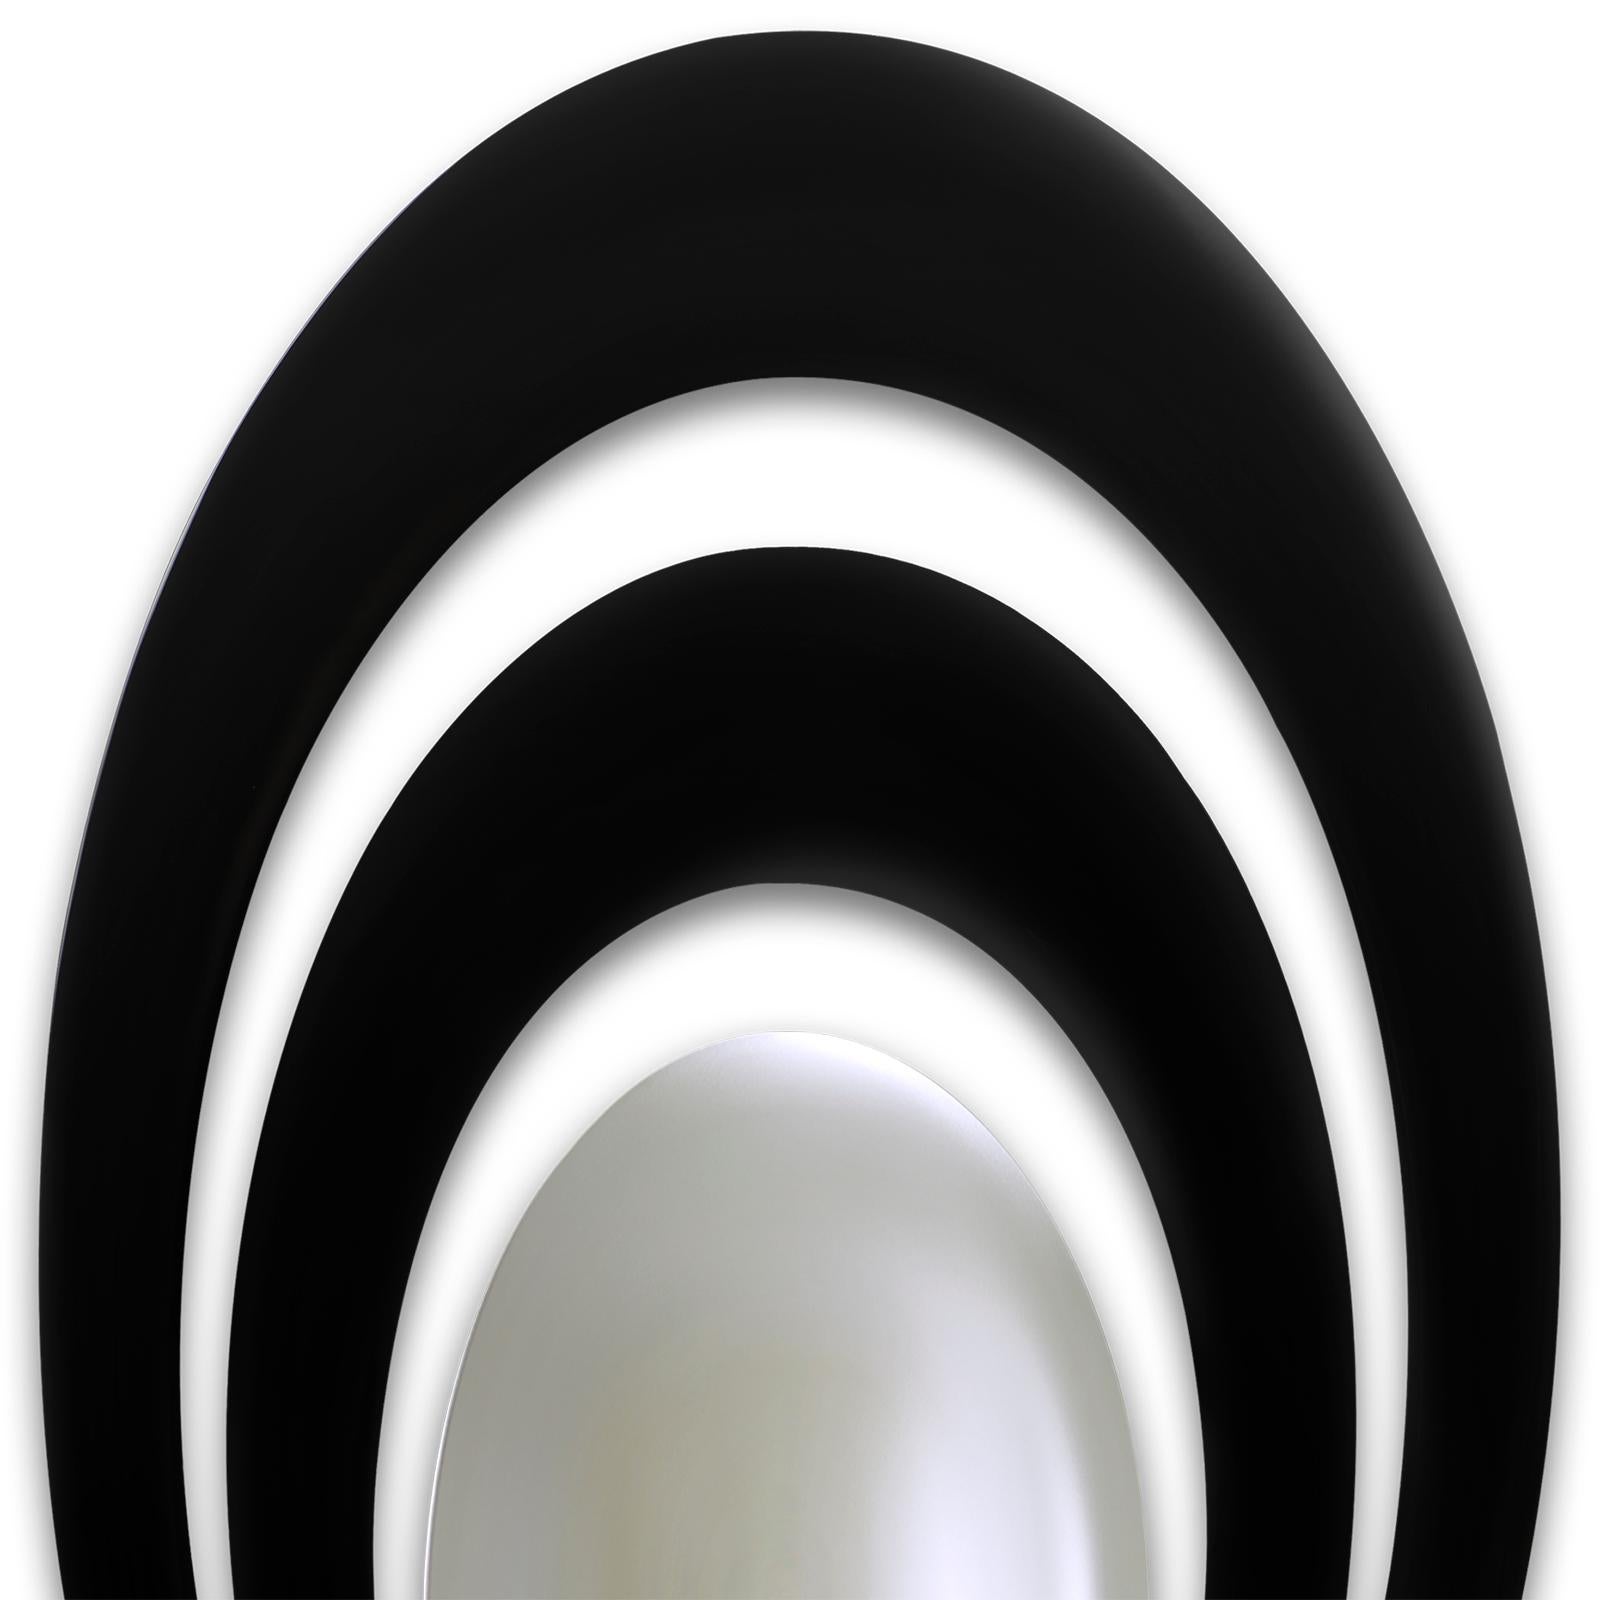 Miroir Serail ovale avec 2 cadres ronds en
bois massif sculpté à la main, laqué noir
finition. Miroir central rond et convexe.
Également disponible en finition vert rétro.